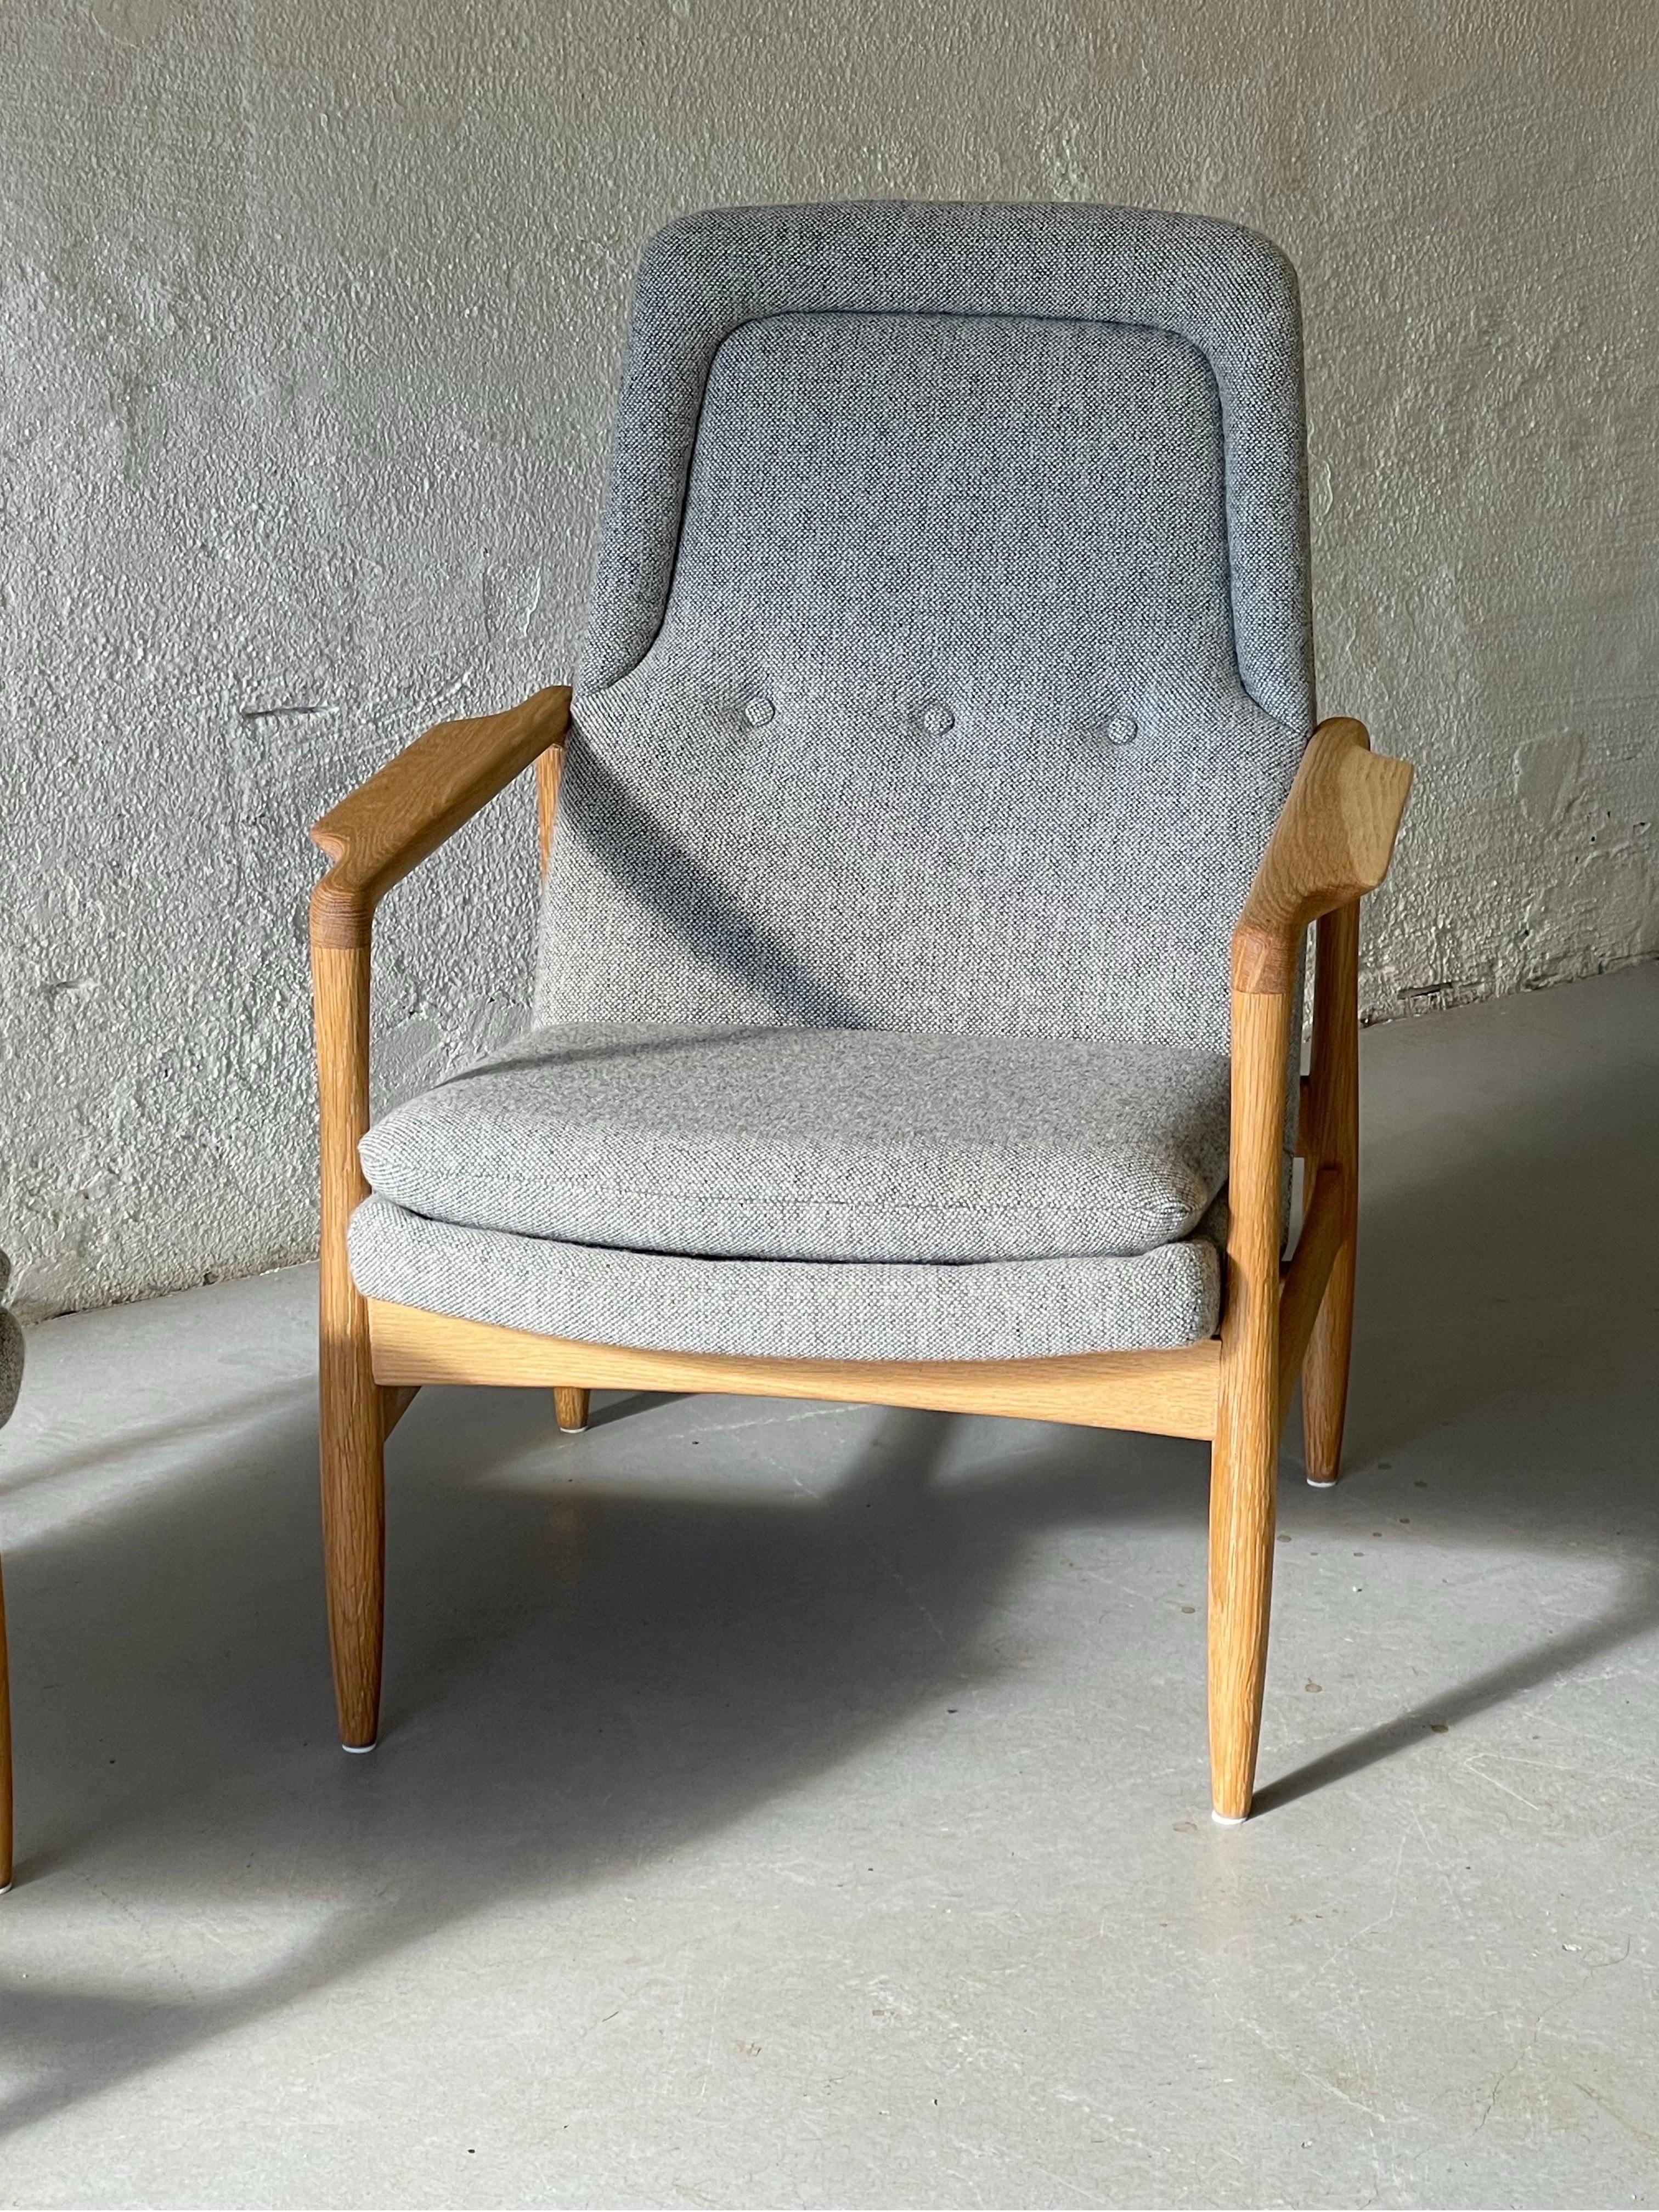 Norwegian Midcentury - Modern chairs, Torbjørn Afdal, 1957 1